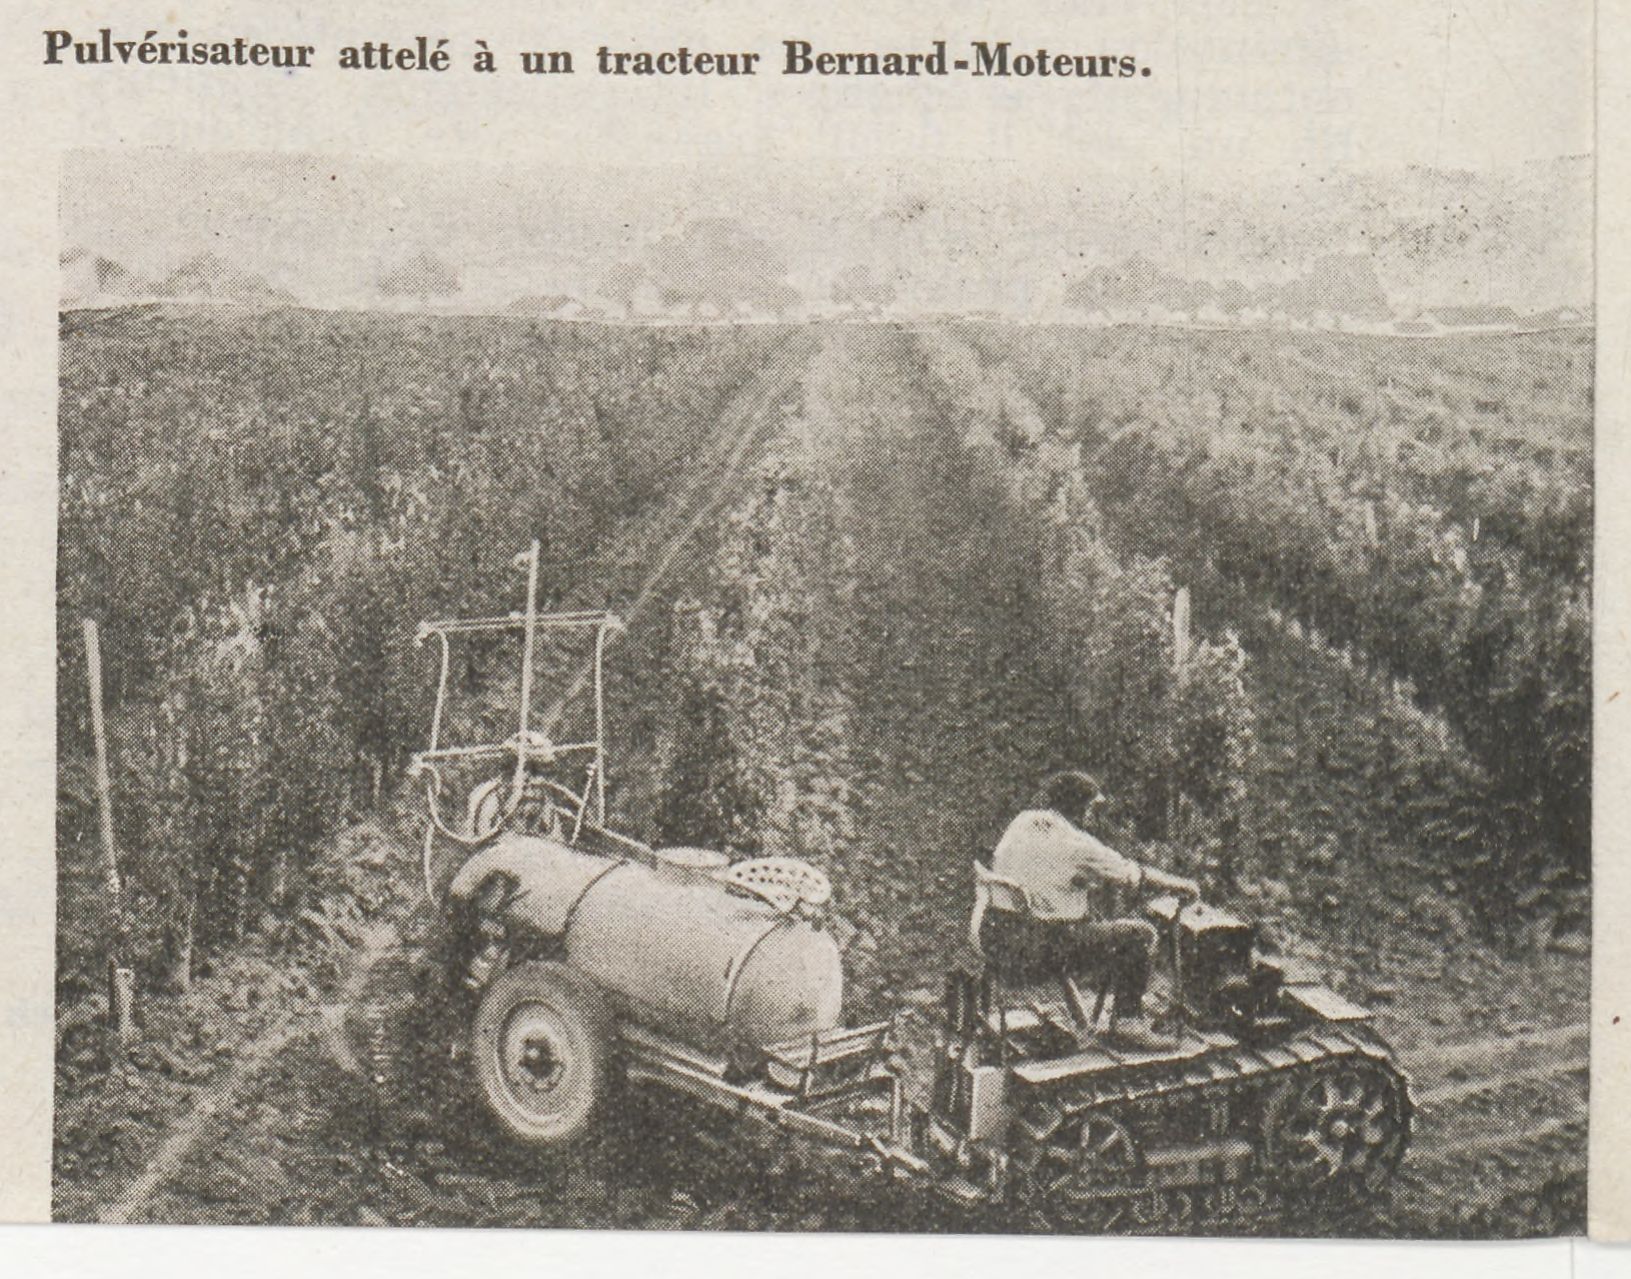 11 - Recensement des tracteurs BERNARD-MOTEURS BT2 et BT14 - Page 9 Sia_jo15